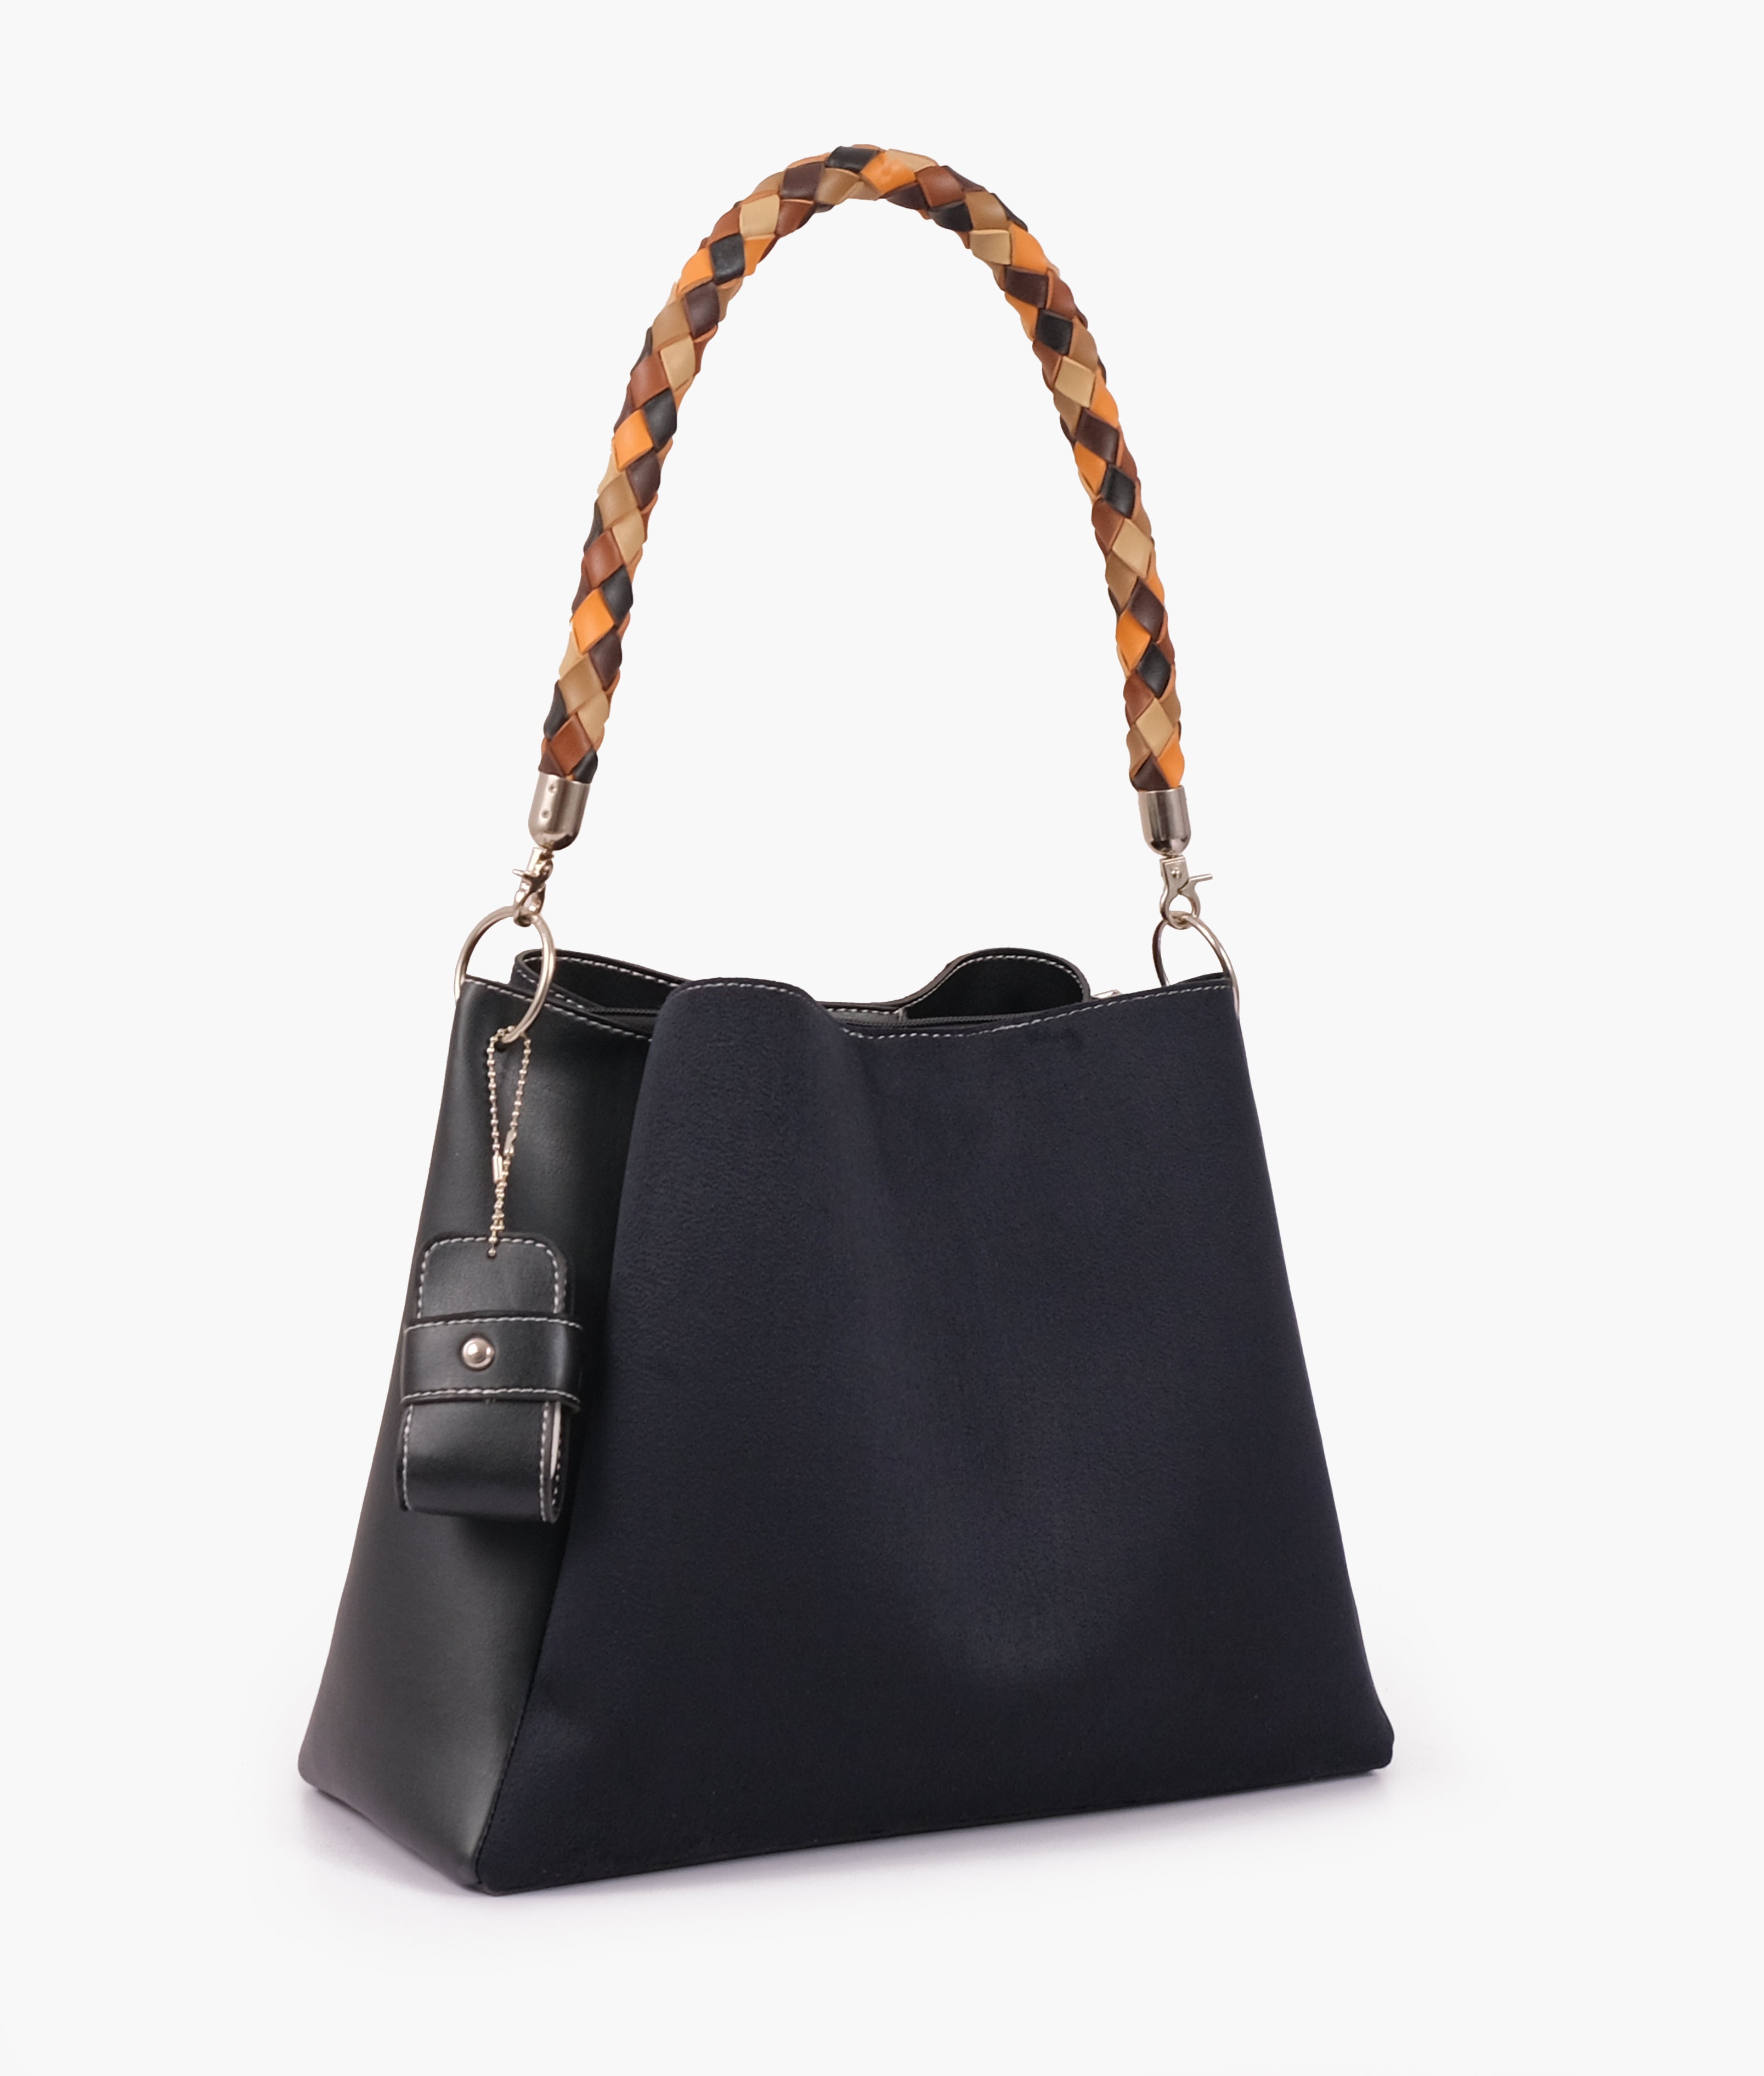 Black suede handbag with braided handle